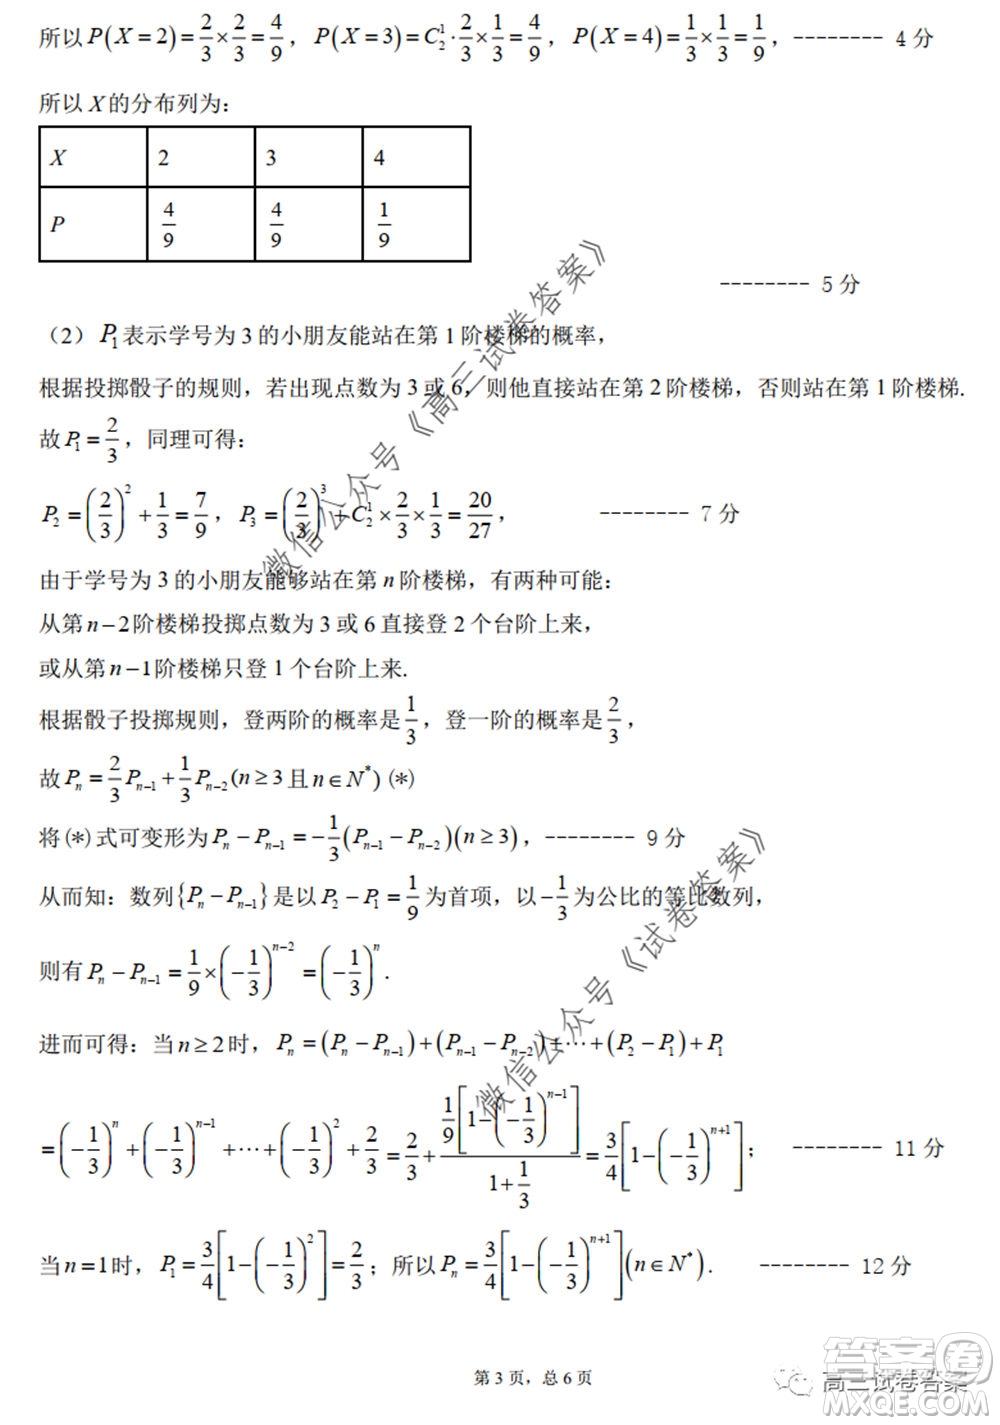 黑龙江省实验中学2020年第三次模拟考试理科数学试题及答案